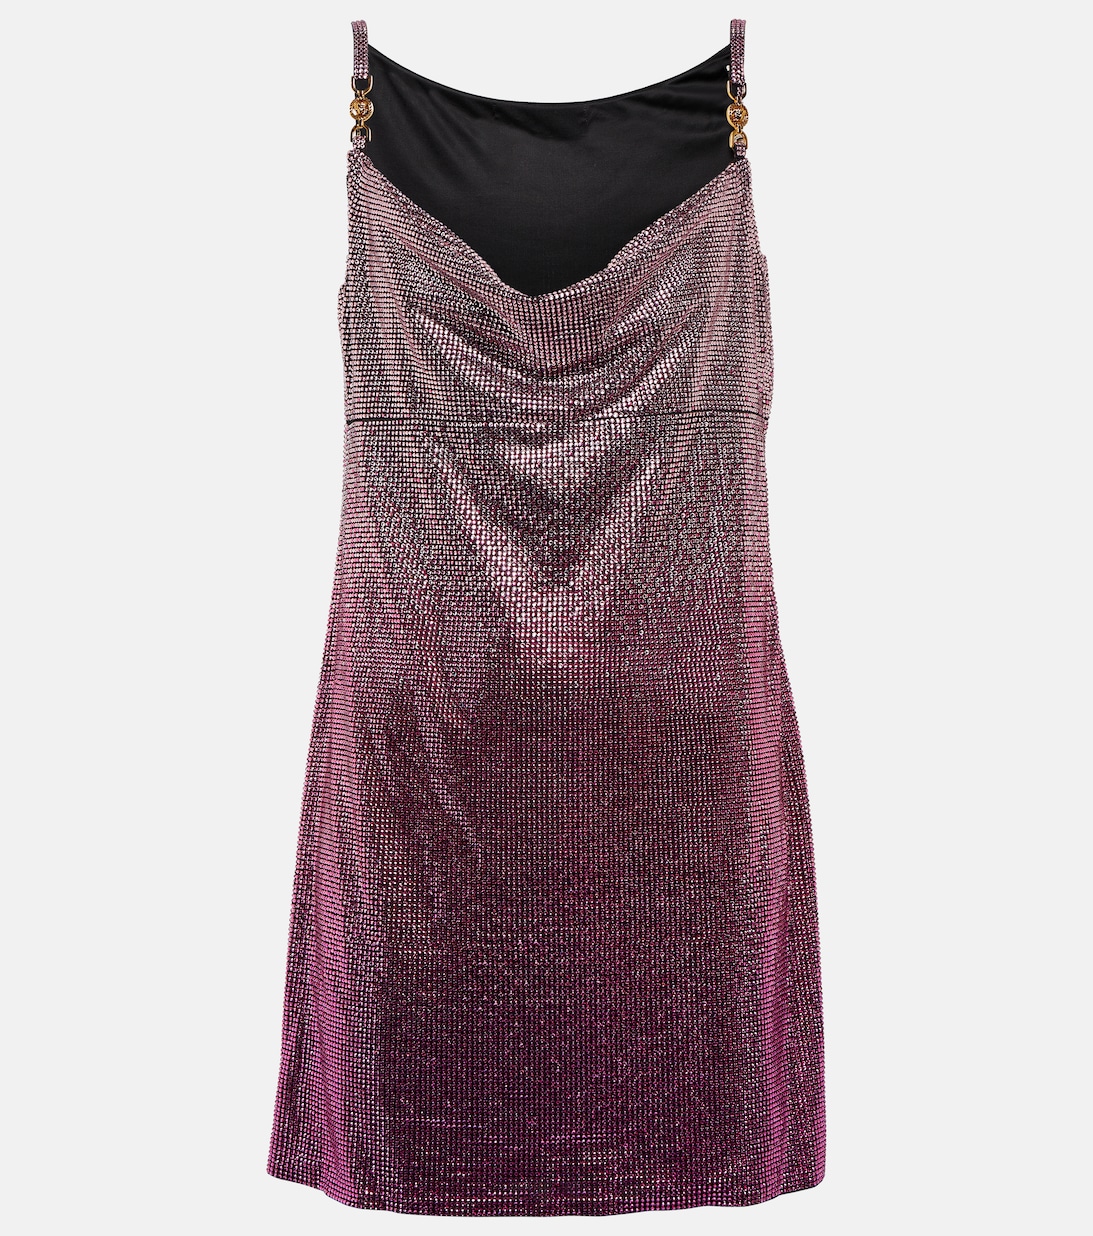 Мини-платье с кристаллами VERSACE, фиолетовый